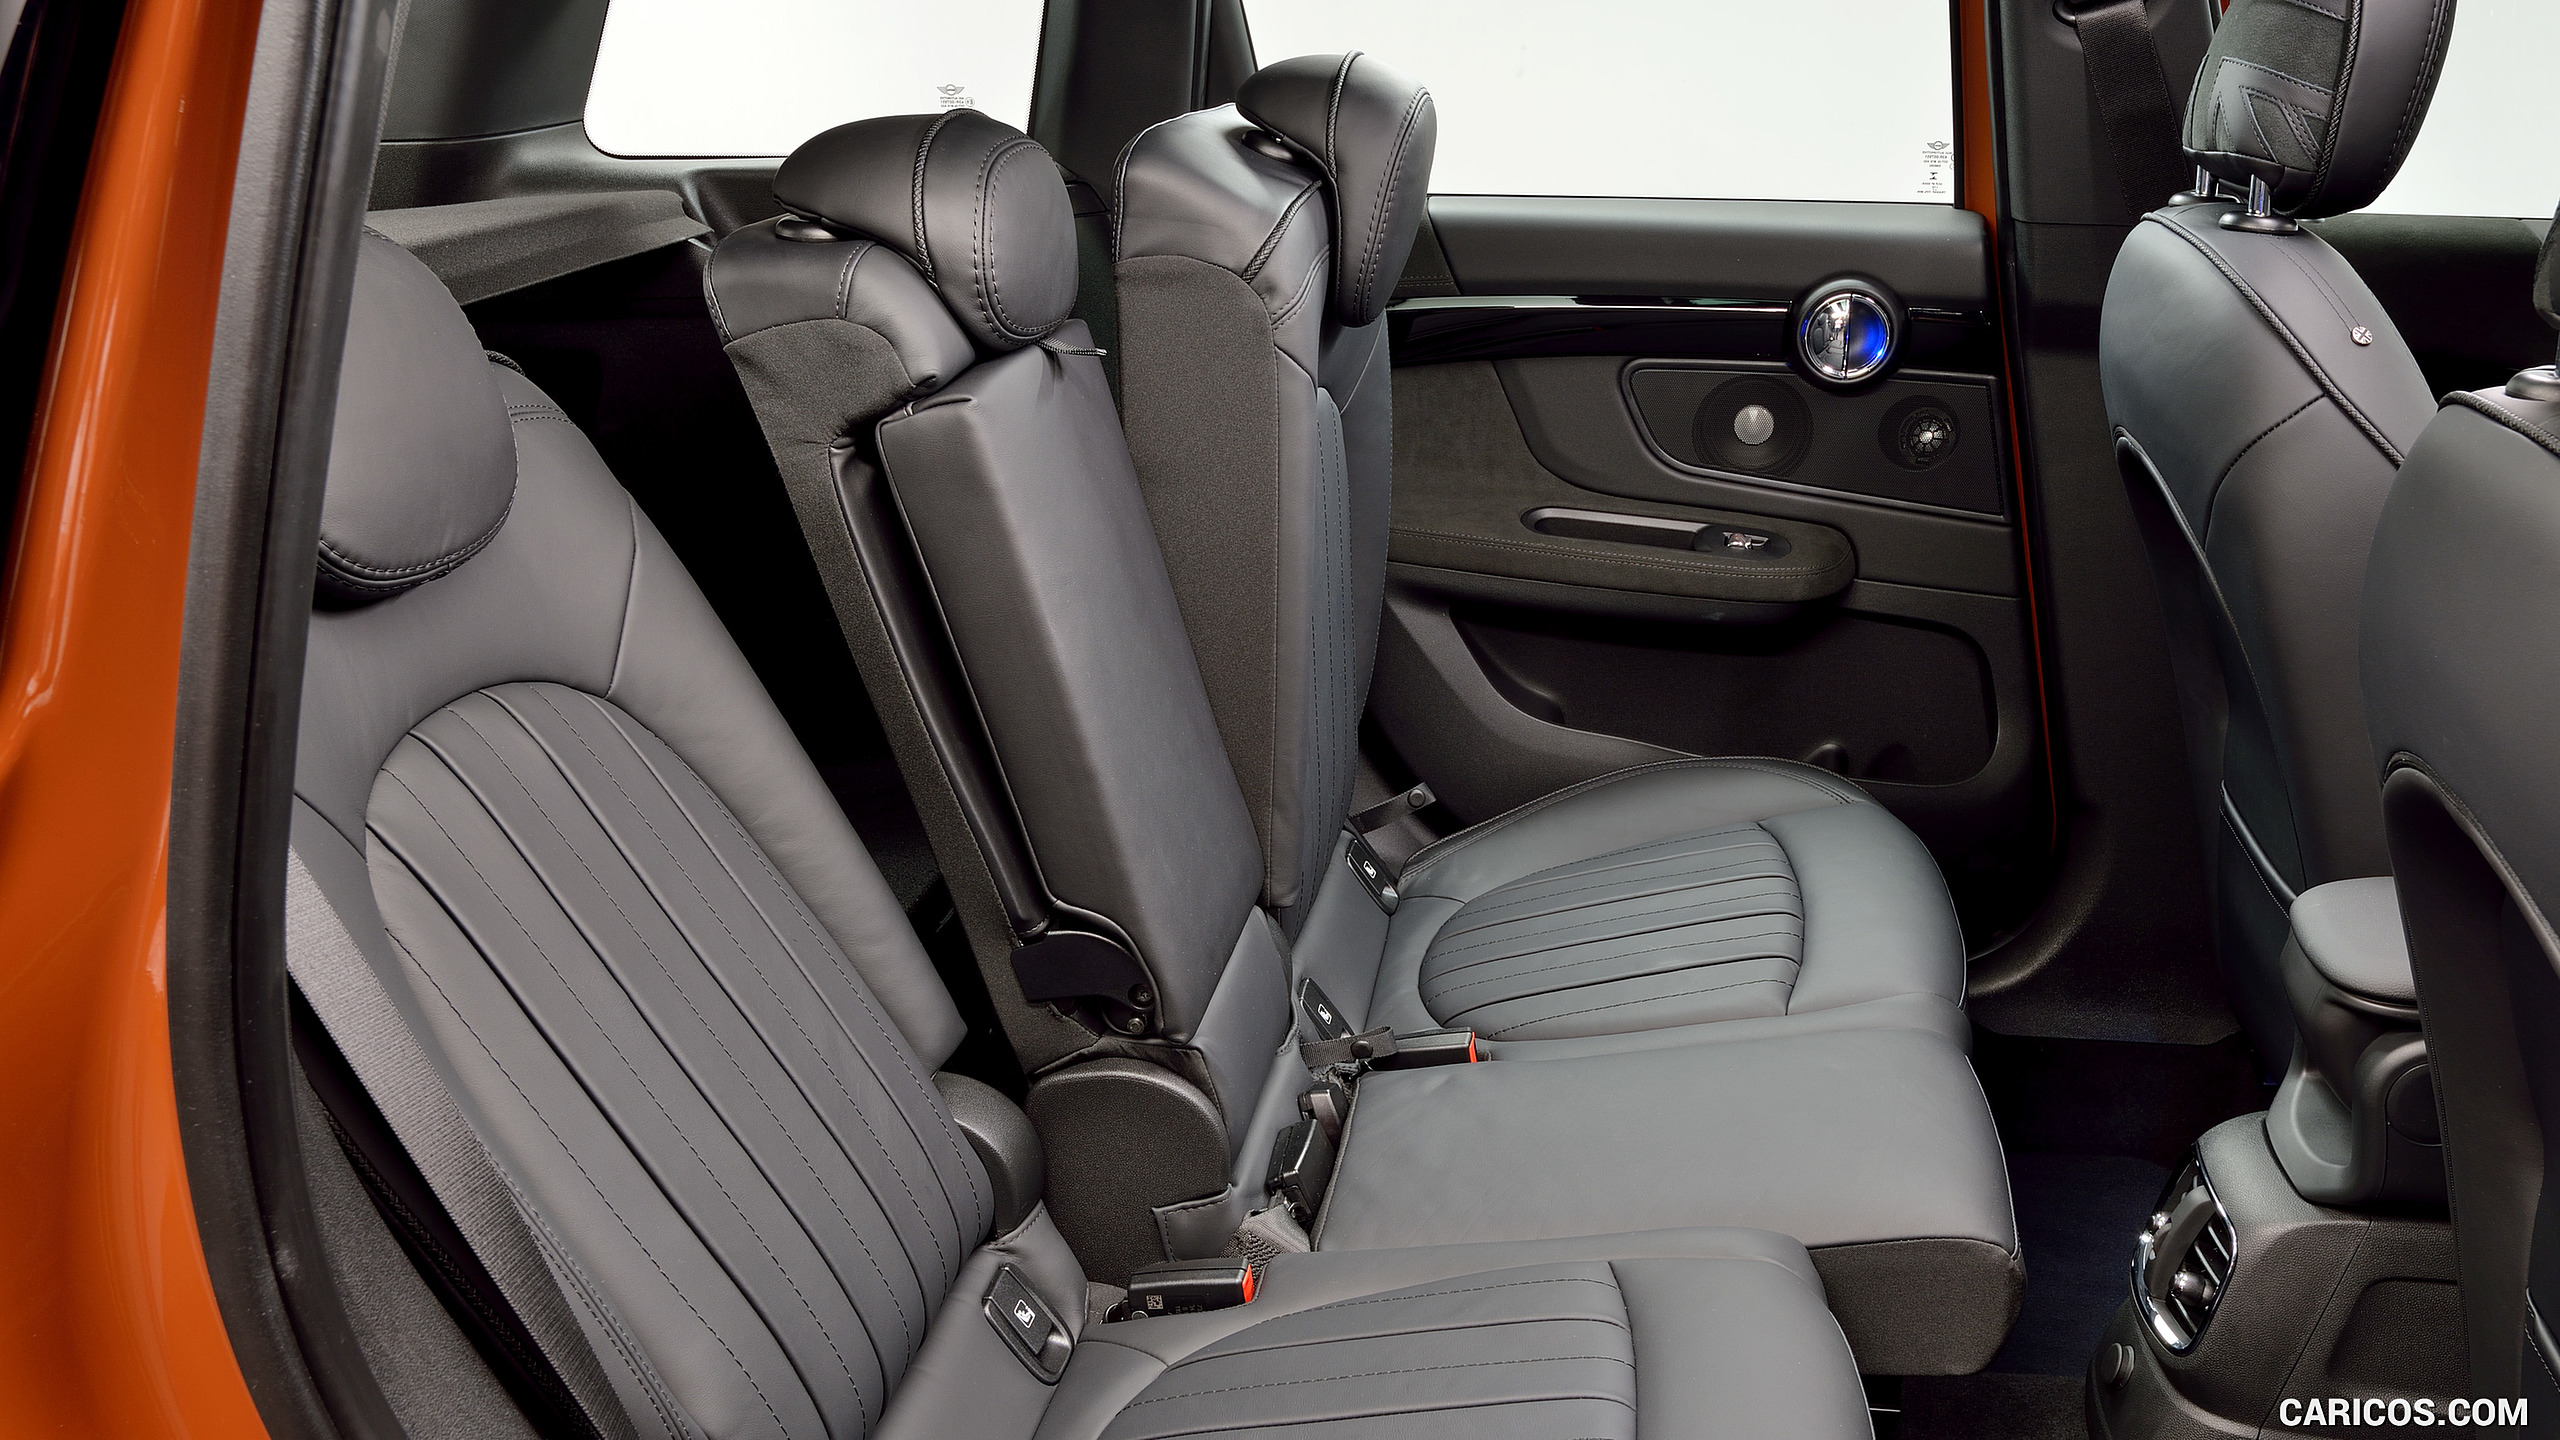 2017 MINI Cooper S Countryman ALL4 - Interior, Rear Seats, #235 of 372